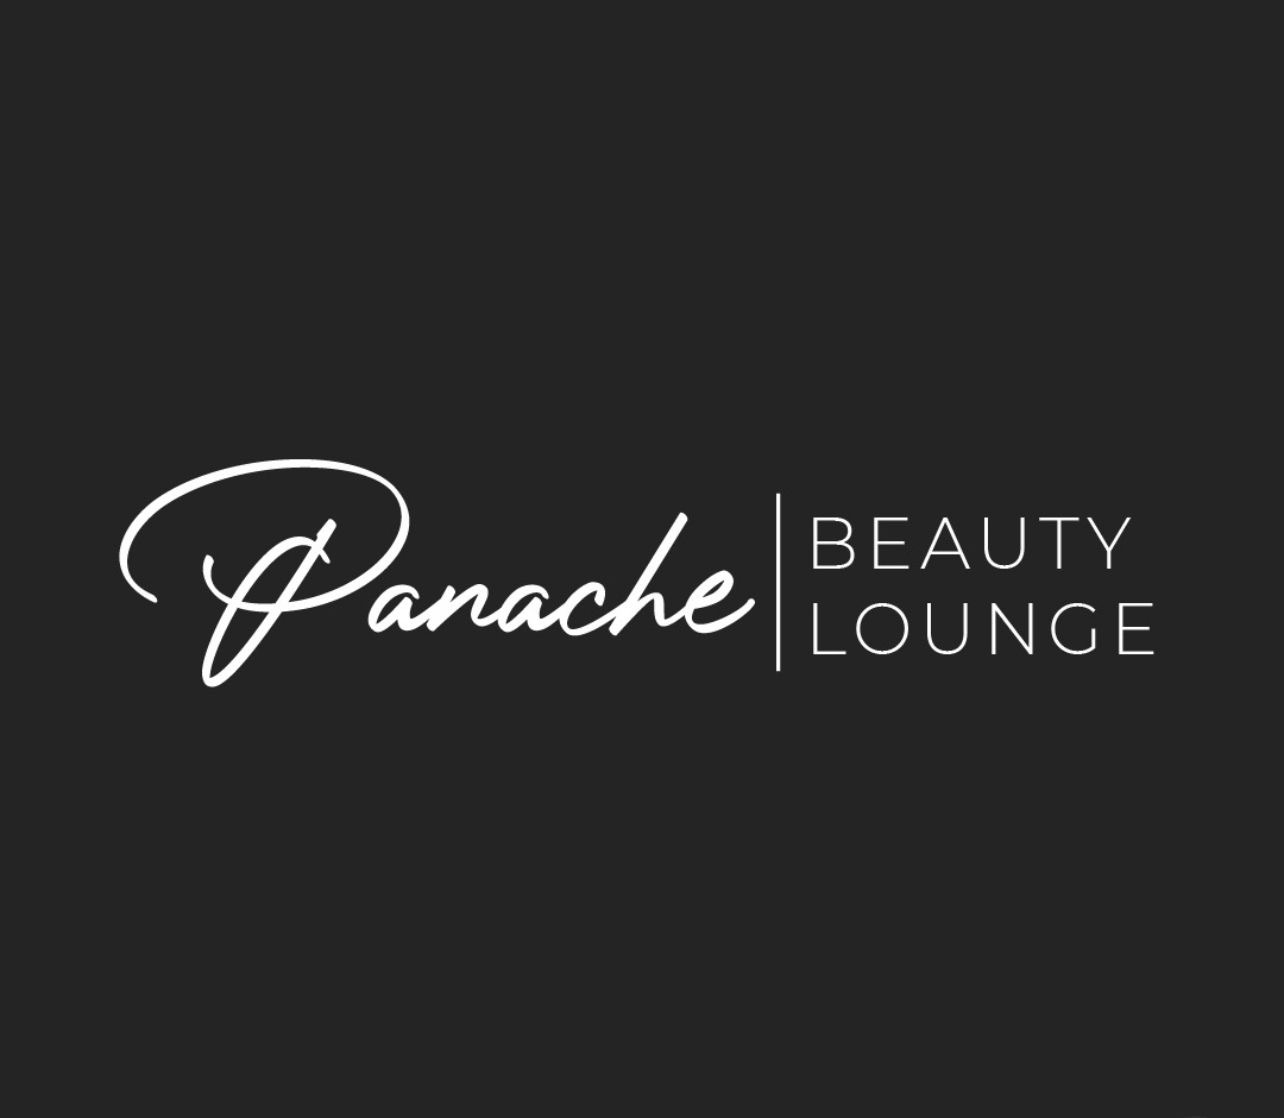 Panache Beauty Lounge Logo